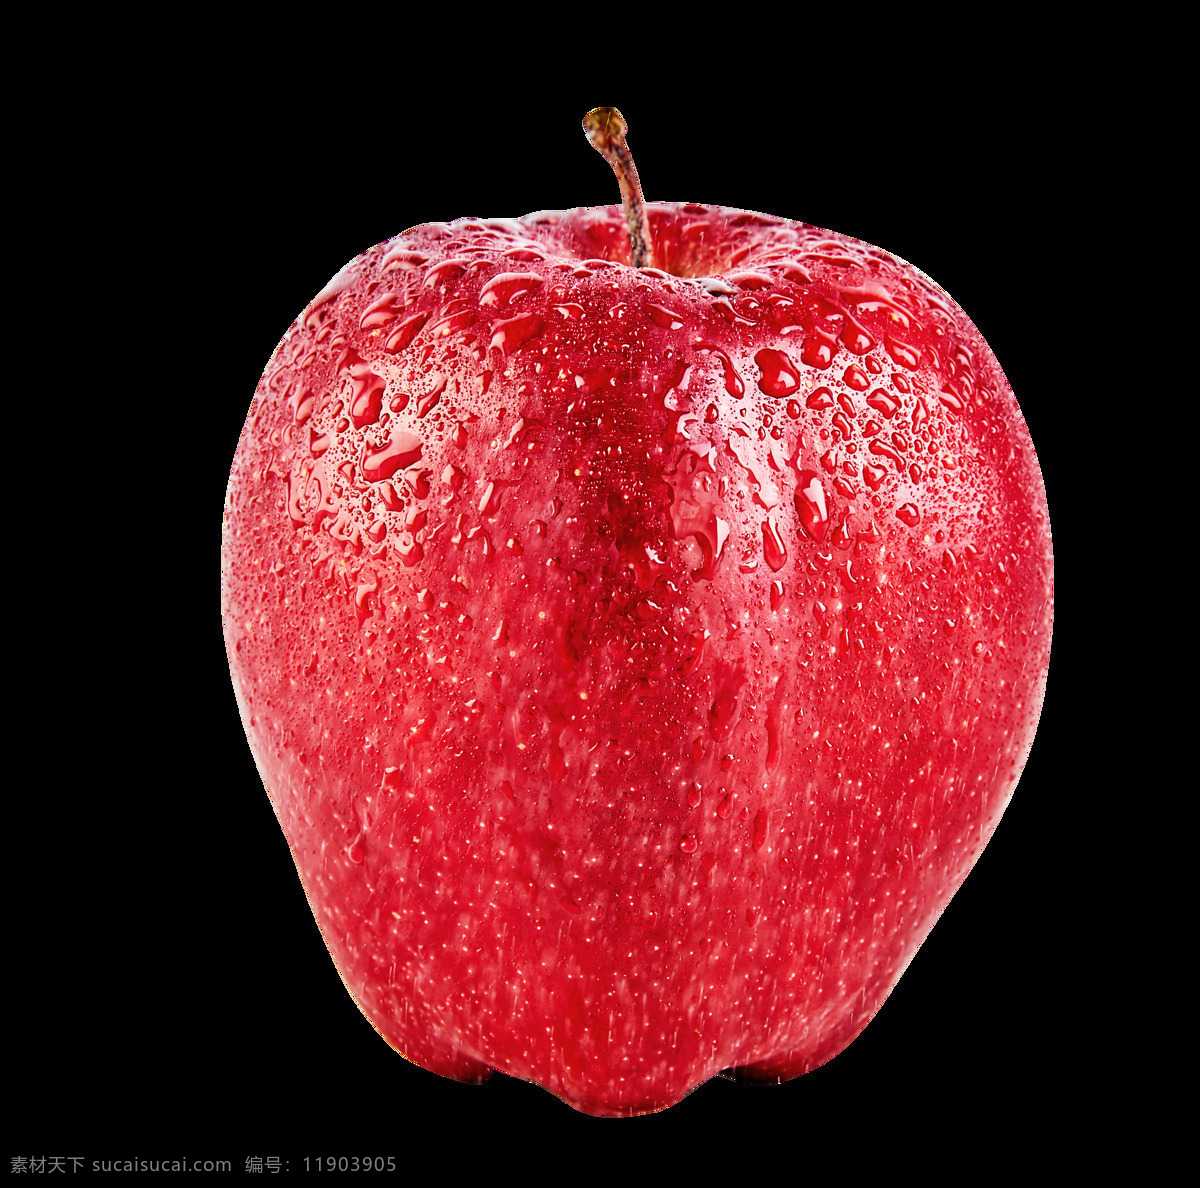 红色苹果素材 水果 苹果 果 生鲜 红色果